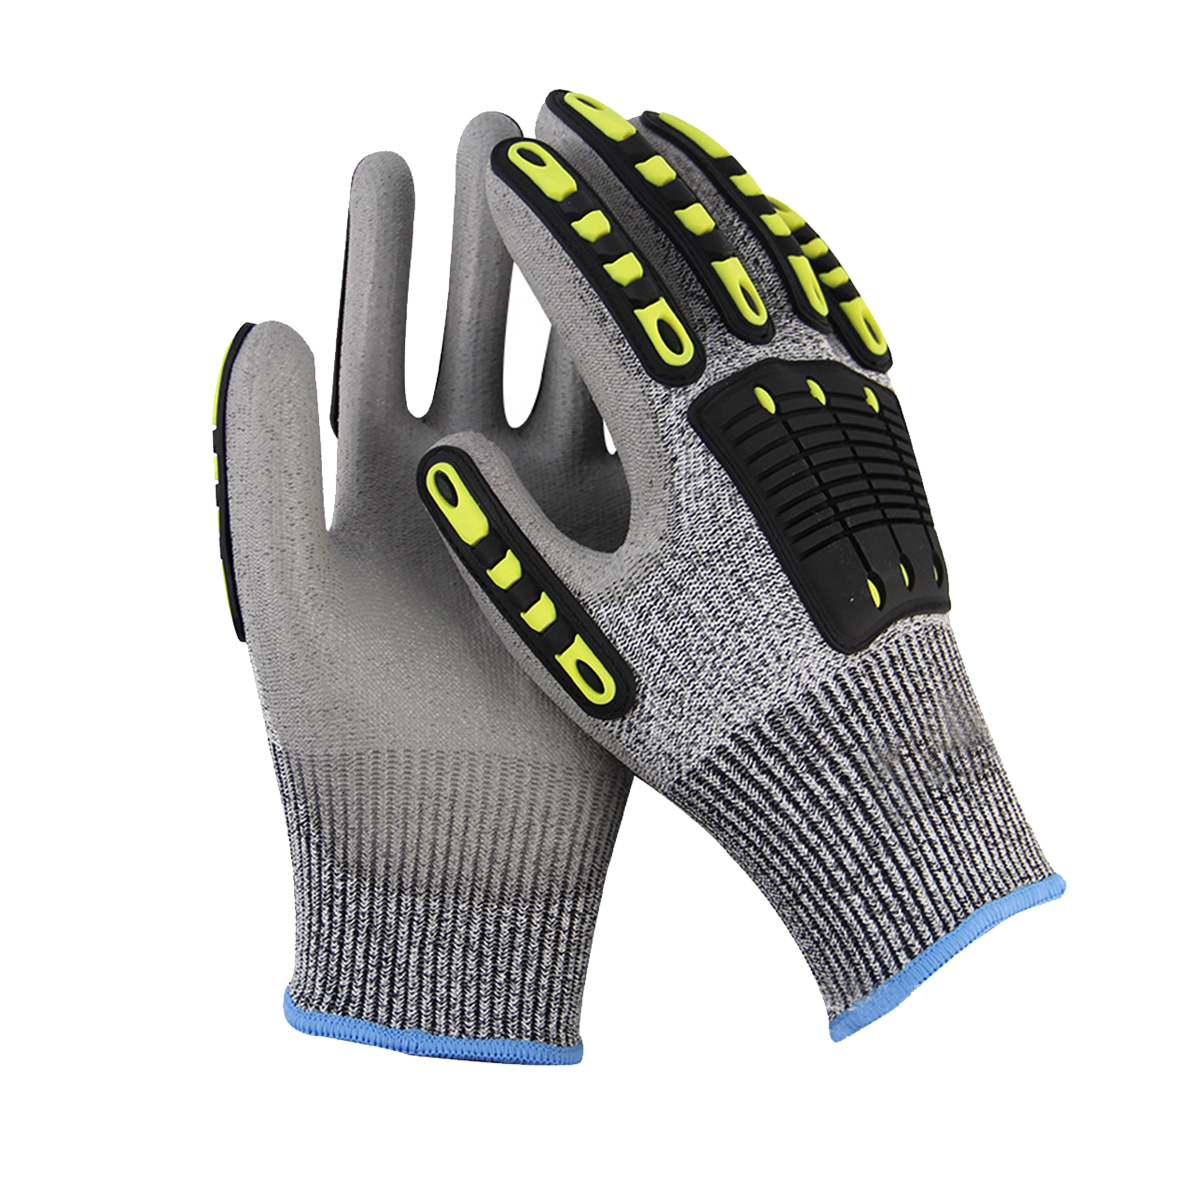 ការជីកយករ៉ែកម្រិត 5 កាត់បន្ថយការរំញ័រដែលធន់ទ្រាំនឹងការប៉ះទង្គិច TPR Mechanic Impact Glove Anti Cut Glove